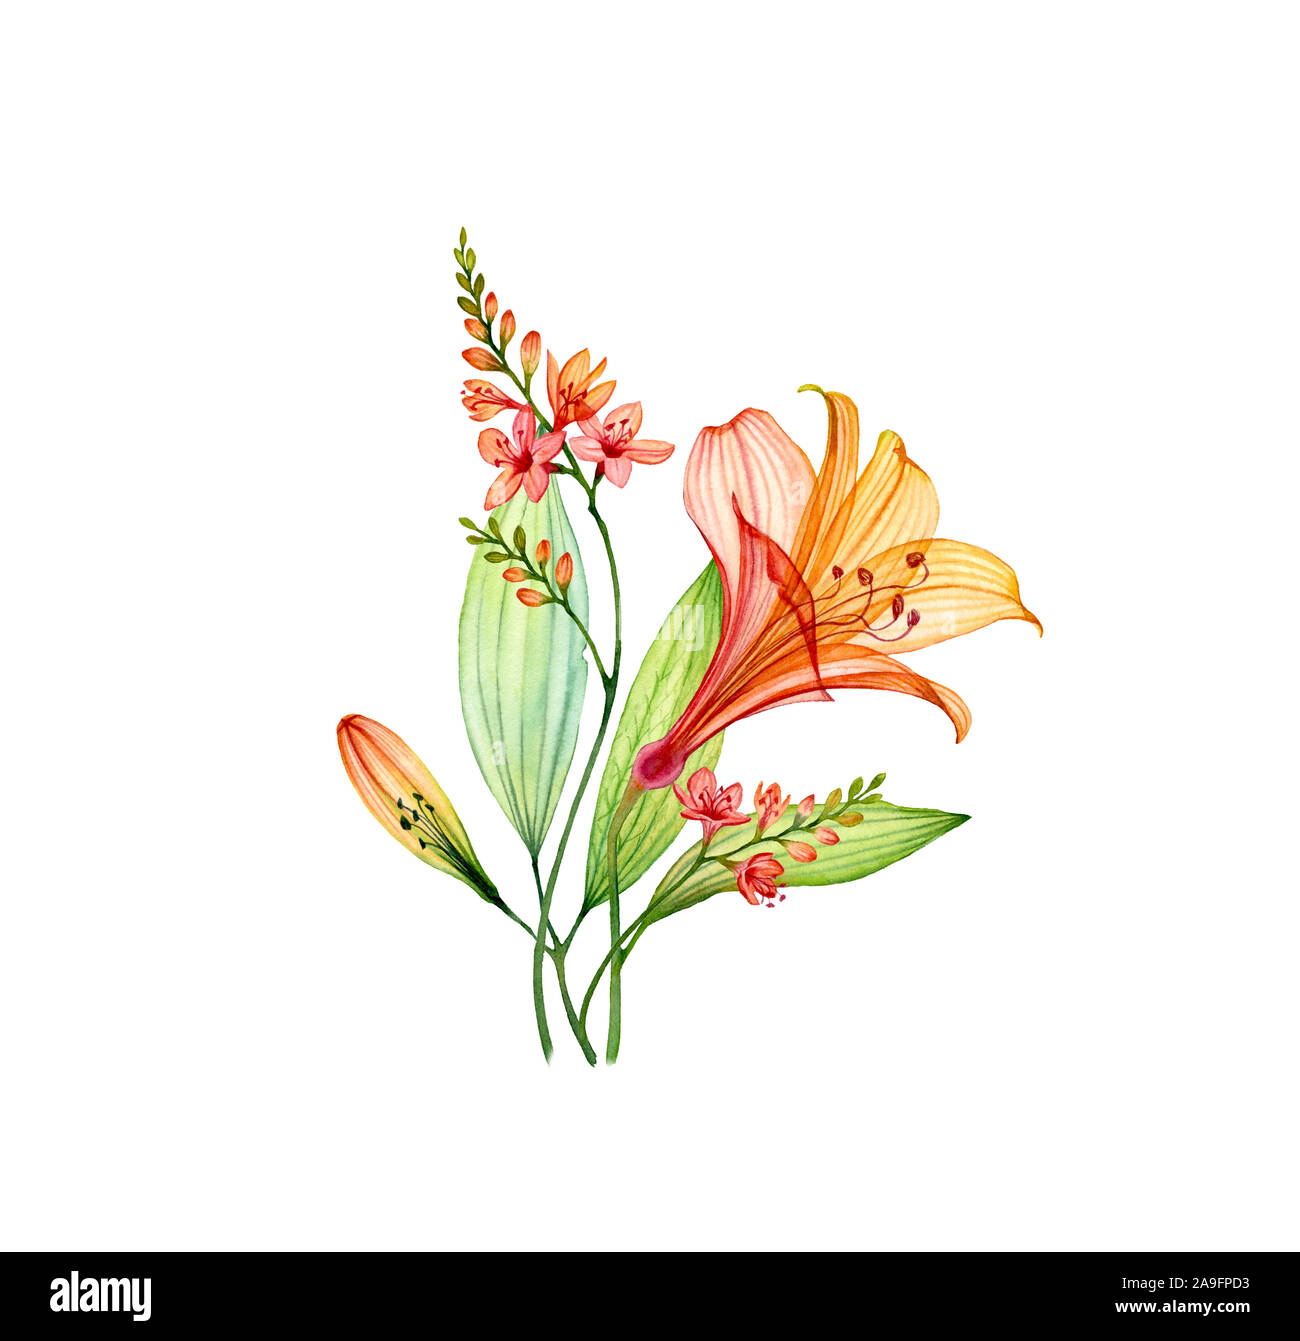 Transparent aquarelle bouquet avec Lily de freesia et de feuilles. Fleurs tropicales colorées isolé sur blanc. Fleurs de mariage d'illustration botanique Banque D'Images